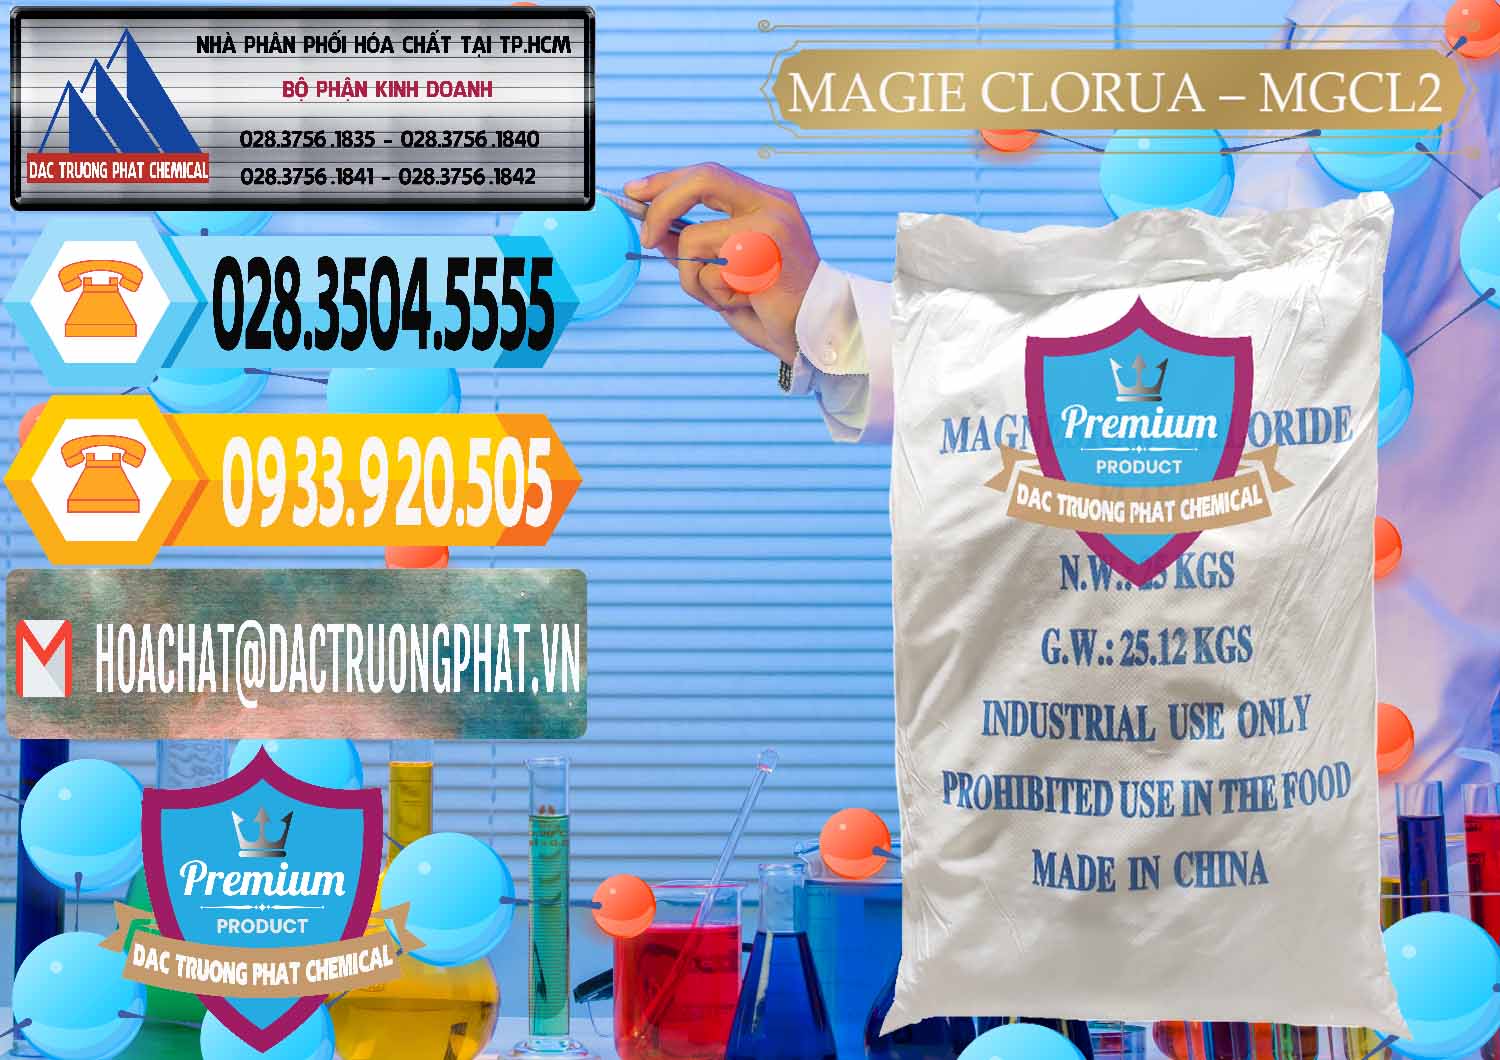 Nơi chuyên bán & phân phối Magie Clorua – MGCL2 96% Dạng Vảy Trung Quốc China - 0091 - Cty chuyên cung ứng _ phân phối hóa chất tại TP.HCM - hoachattayrua.net